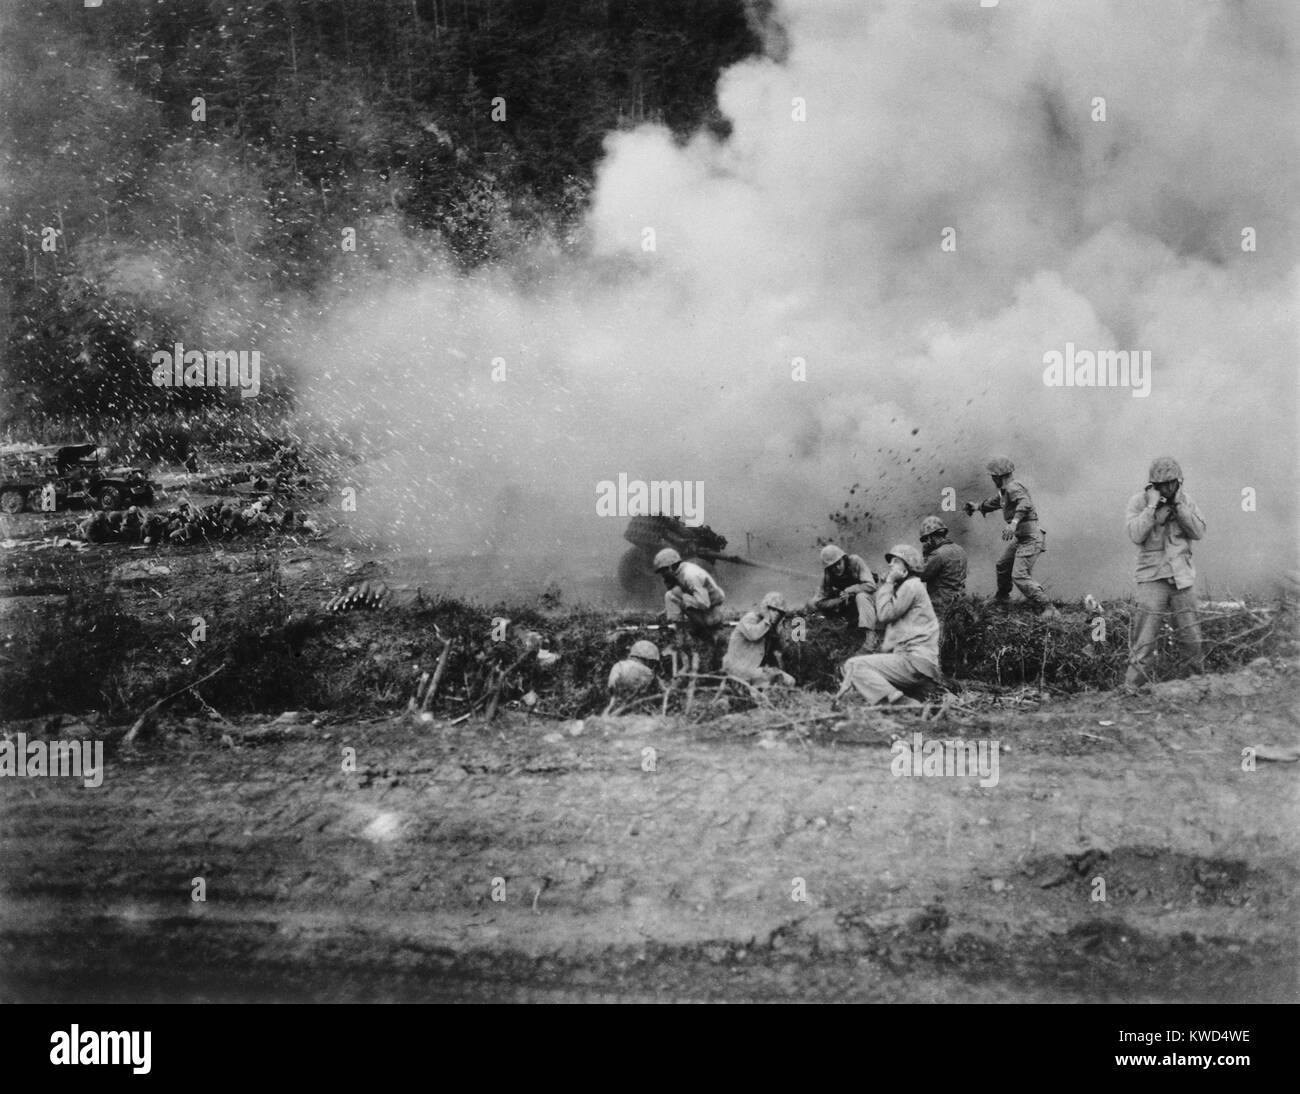 Us-Marines starten ein 4,5 Rakete Trommelfeuer gegen die chinesischen Kommunisten im koreanischen Krieg kämpfen. Ca. 1951. Koreakrieg, 1950-1953. (BSLOC 2014 11 115) Stockfoto